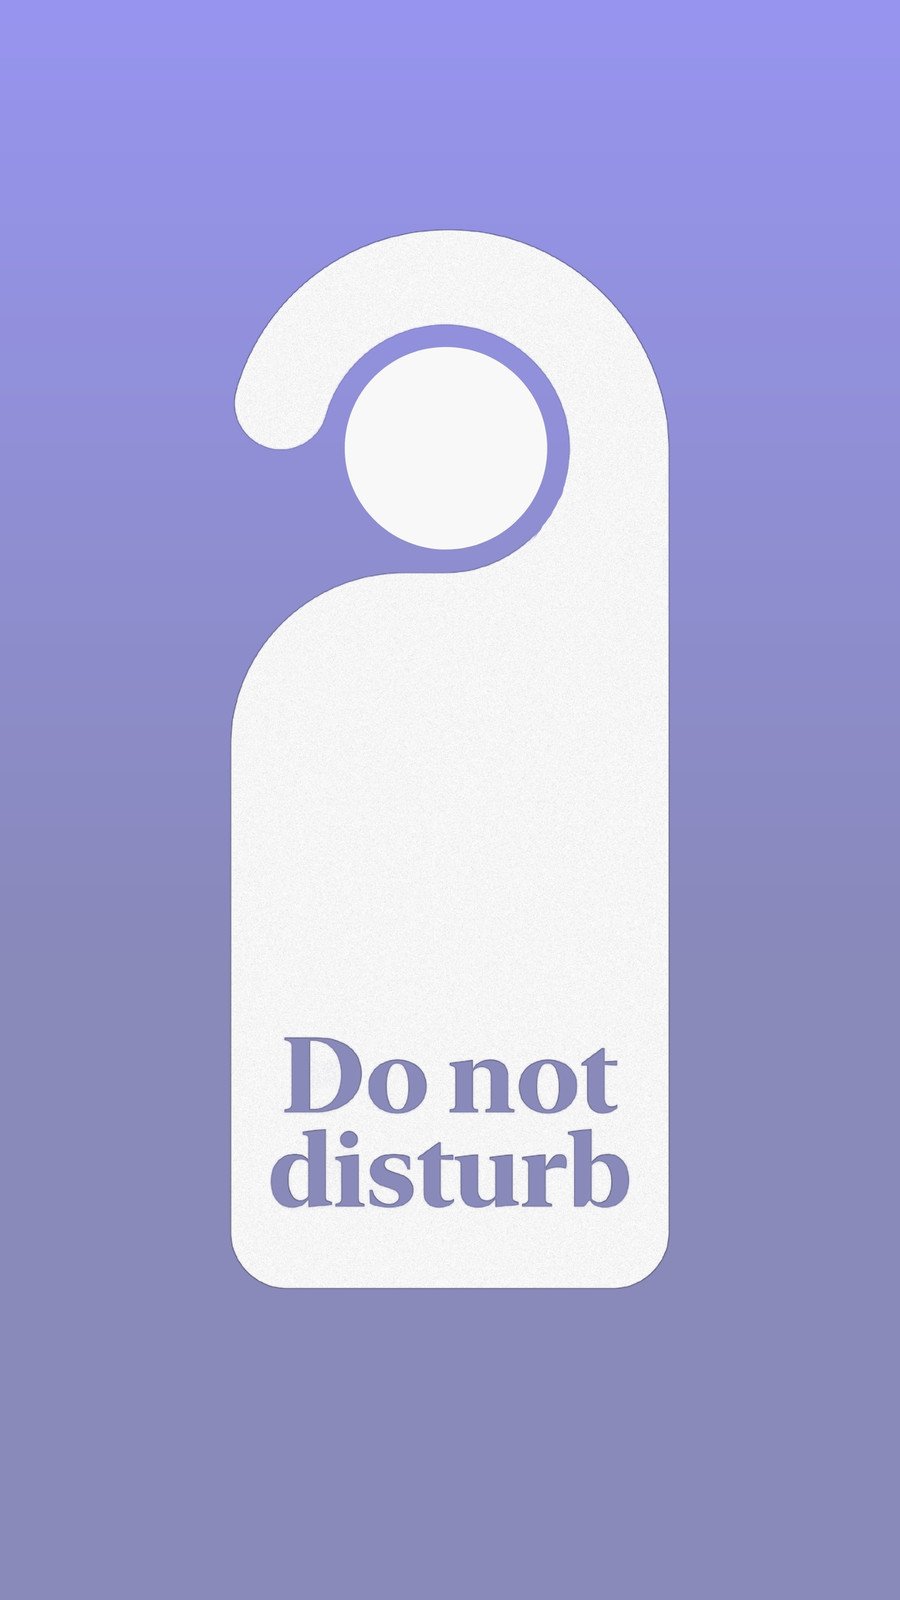 Do Not Disturb disturb sign warning HD wallpaper  Peakpx